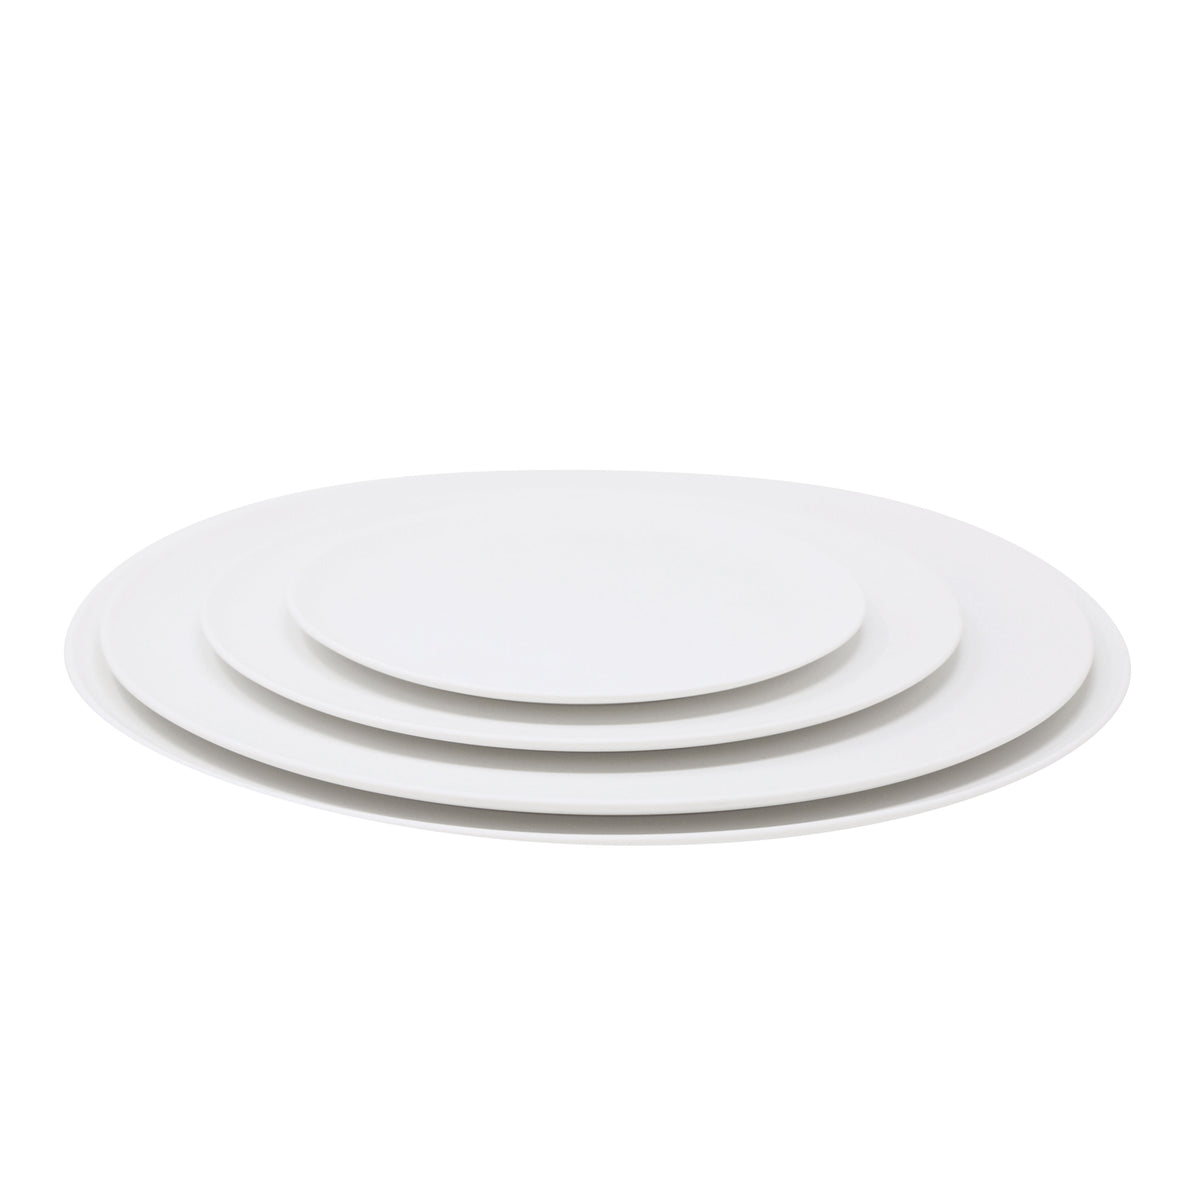 SLIM blanc brillant - Assiette 29 cm